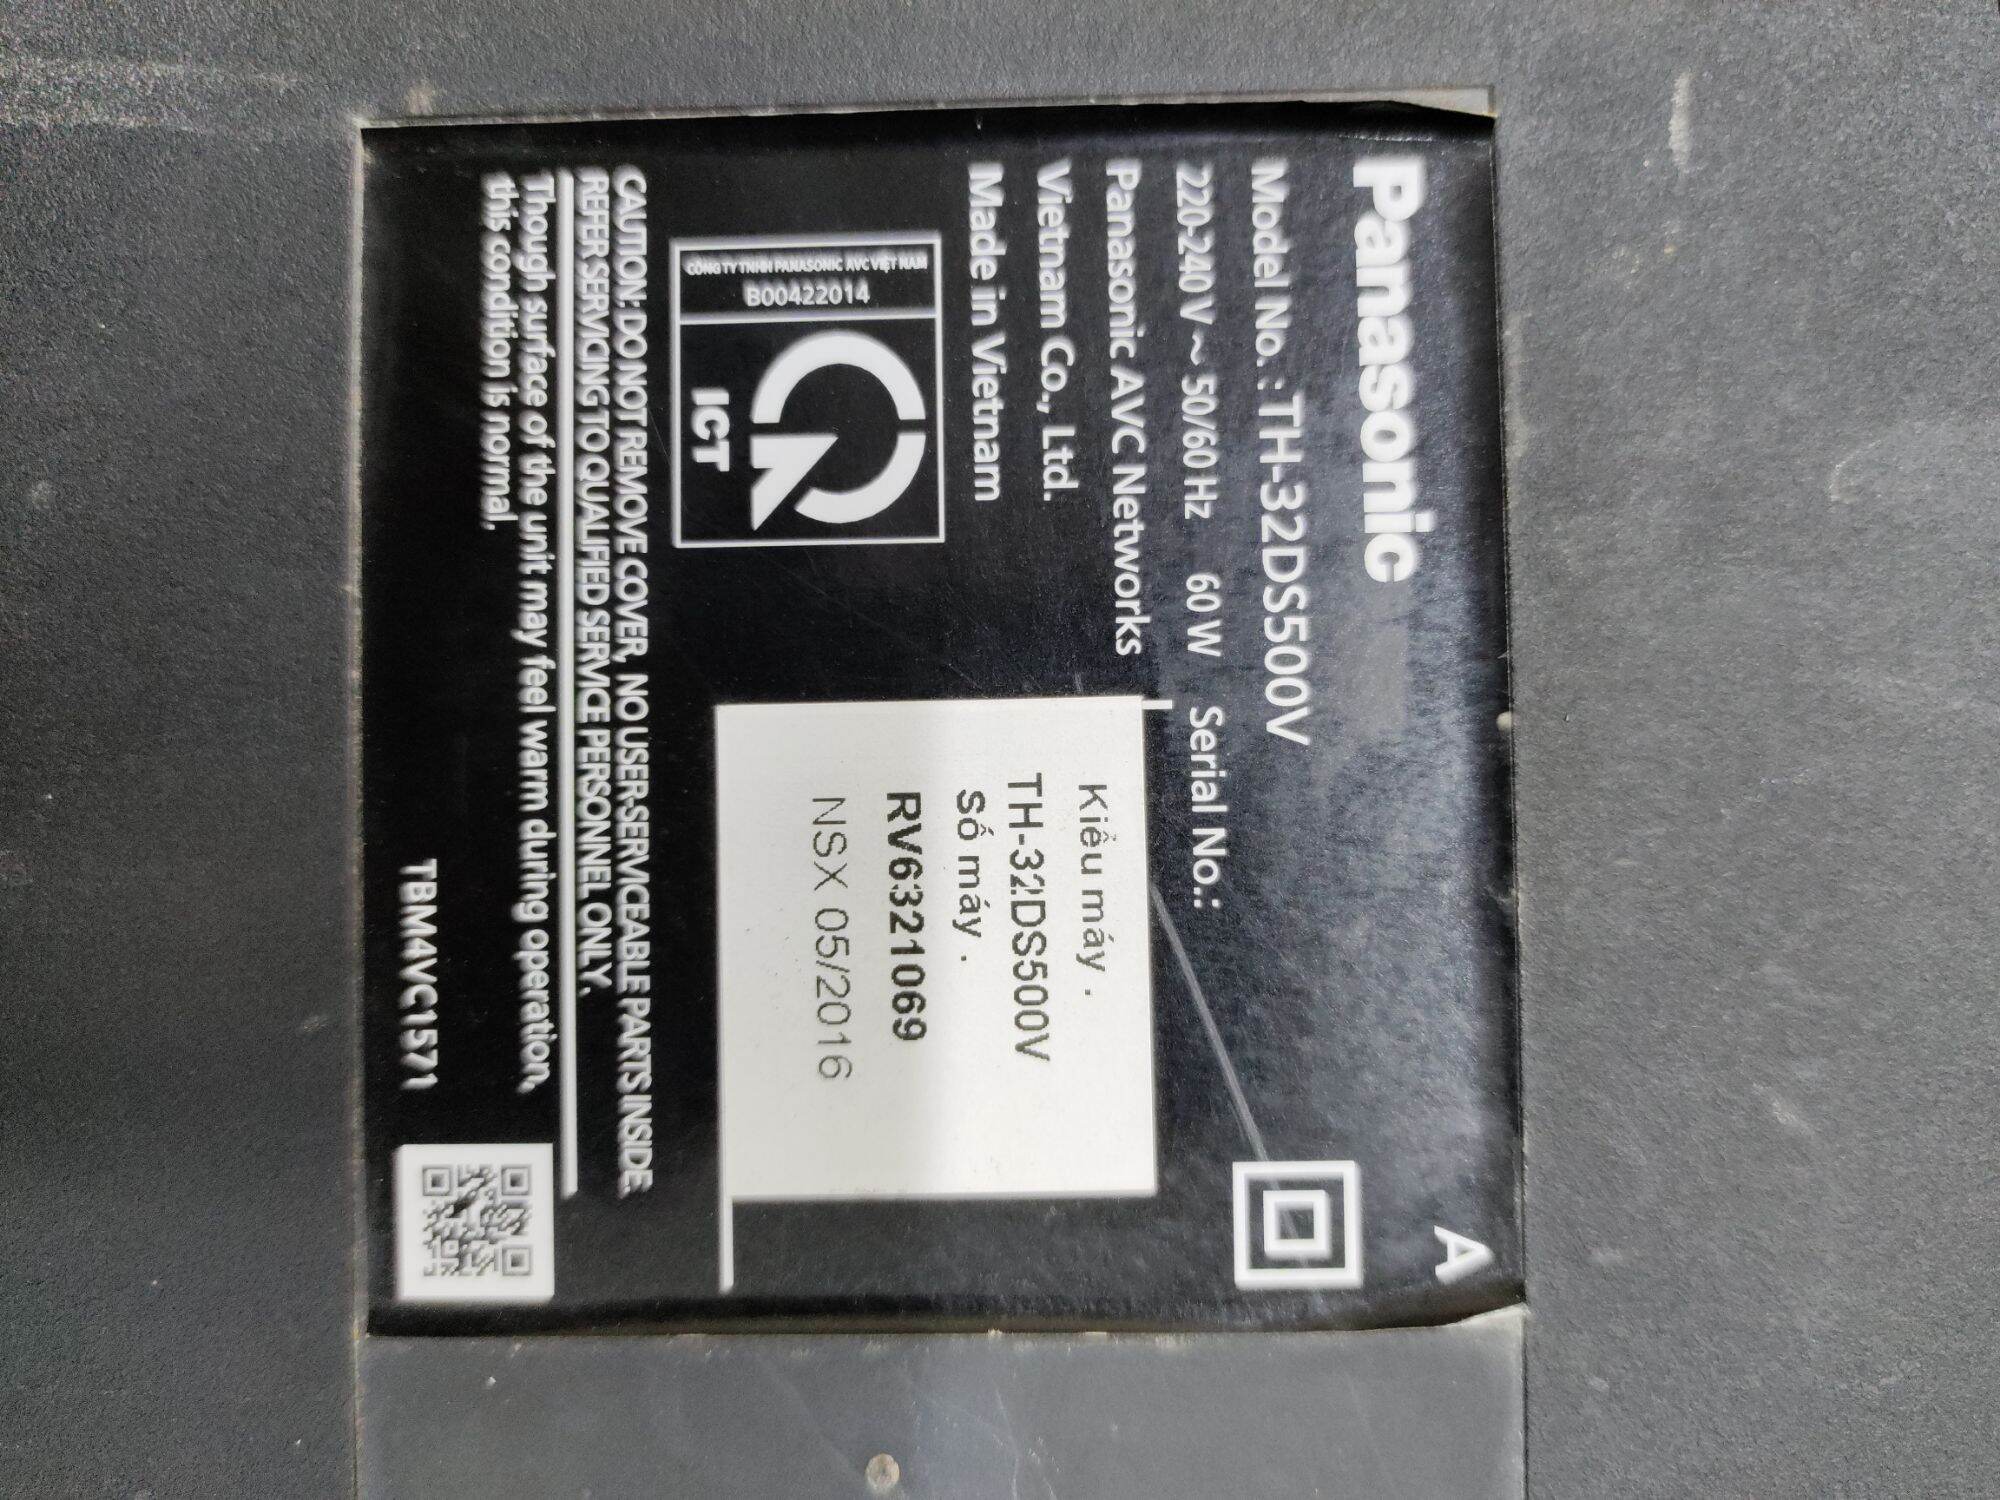 Board mạch tivi Panasonic TH 32DS500V